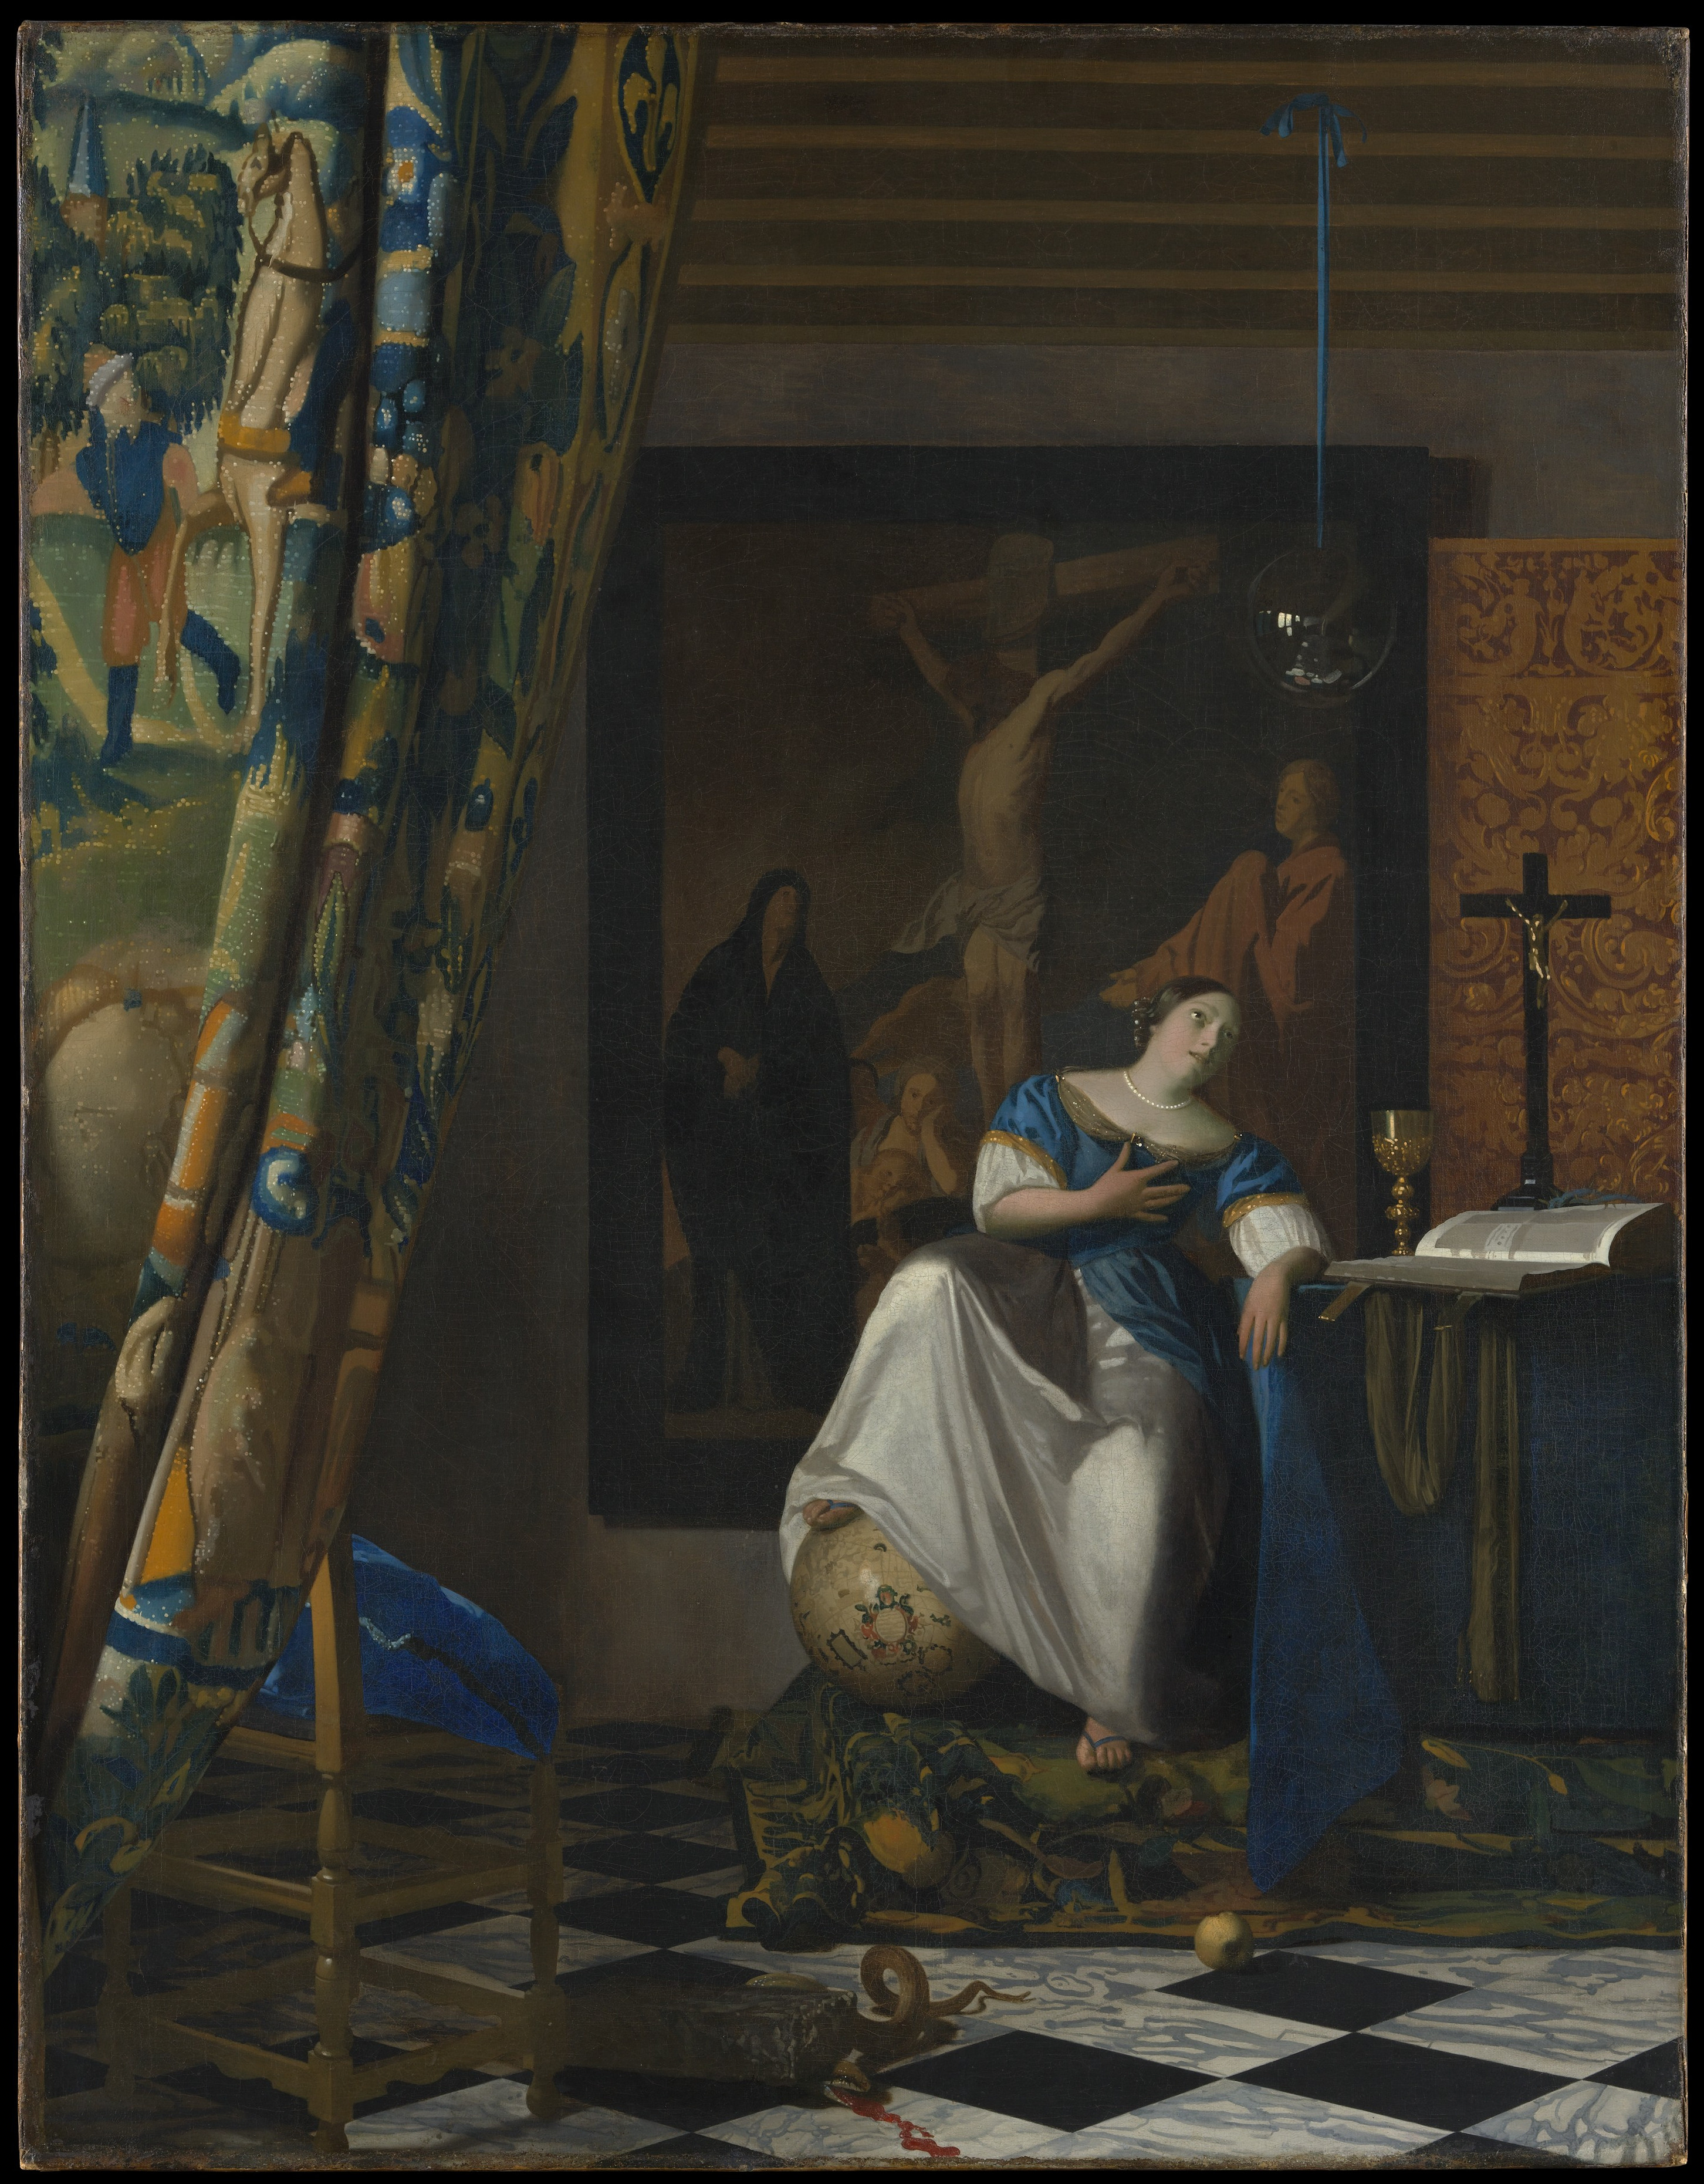 İnanç Alegorisi by Johannes Vermeer - 1671-1674 - 114.3 x 88.9 cm 